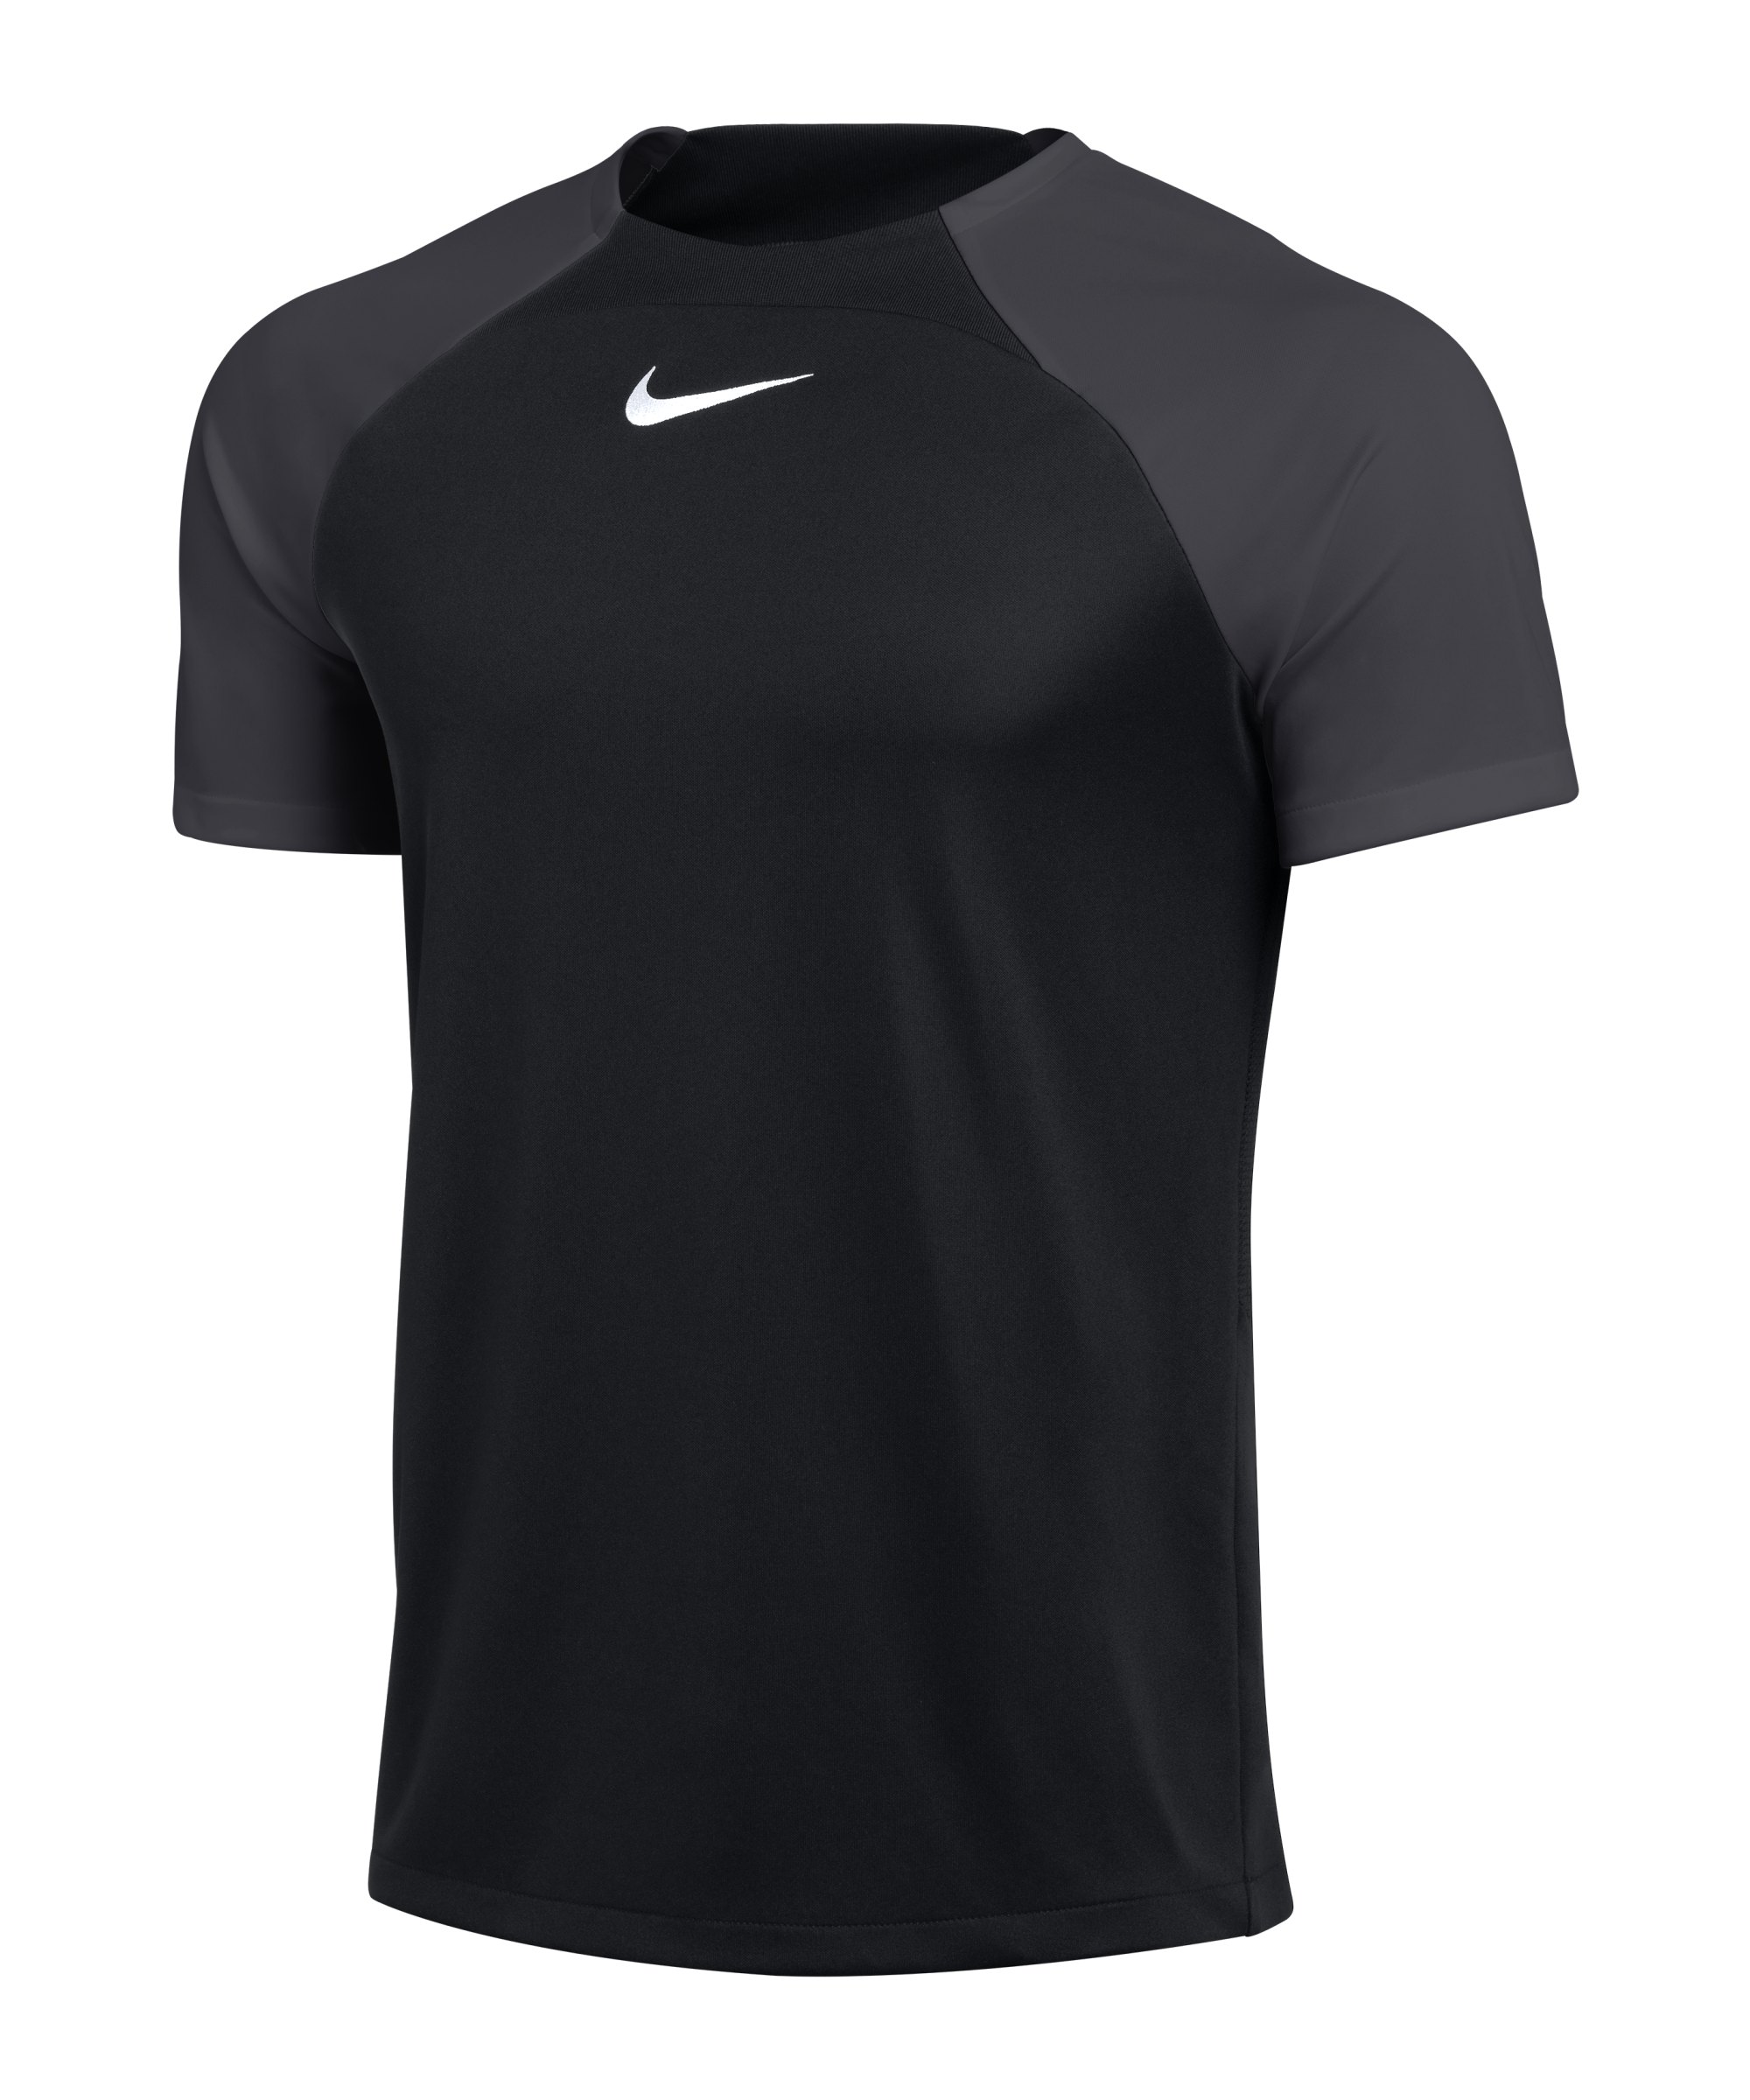 Nike Academy Pro Trainingsshirt Schwarz Grau F011 - schwarz